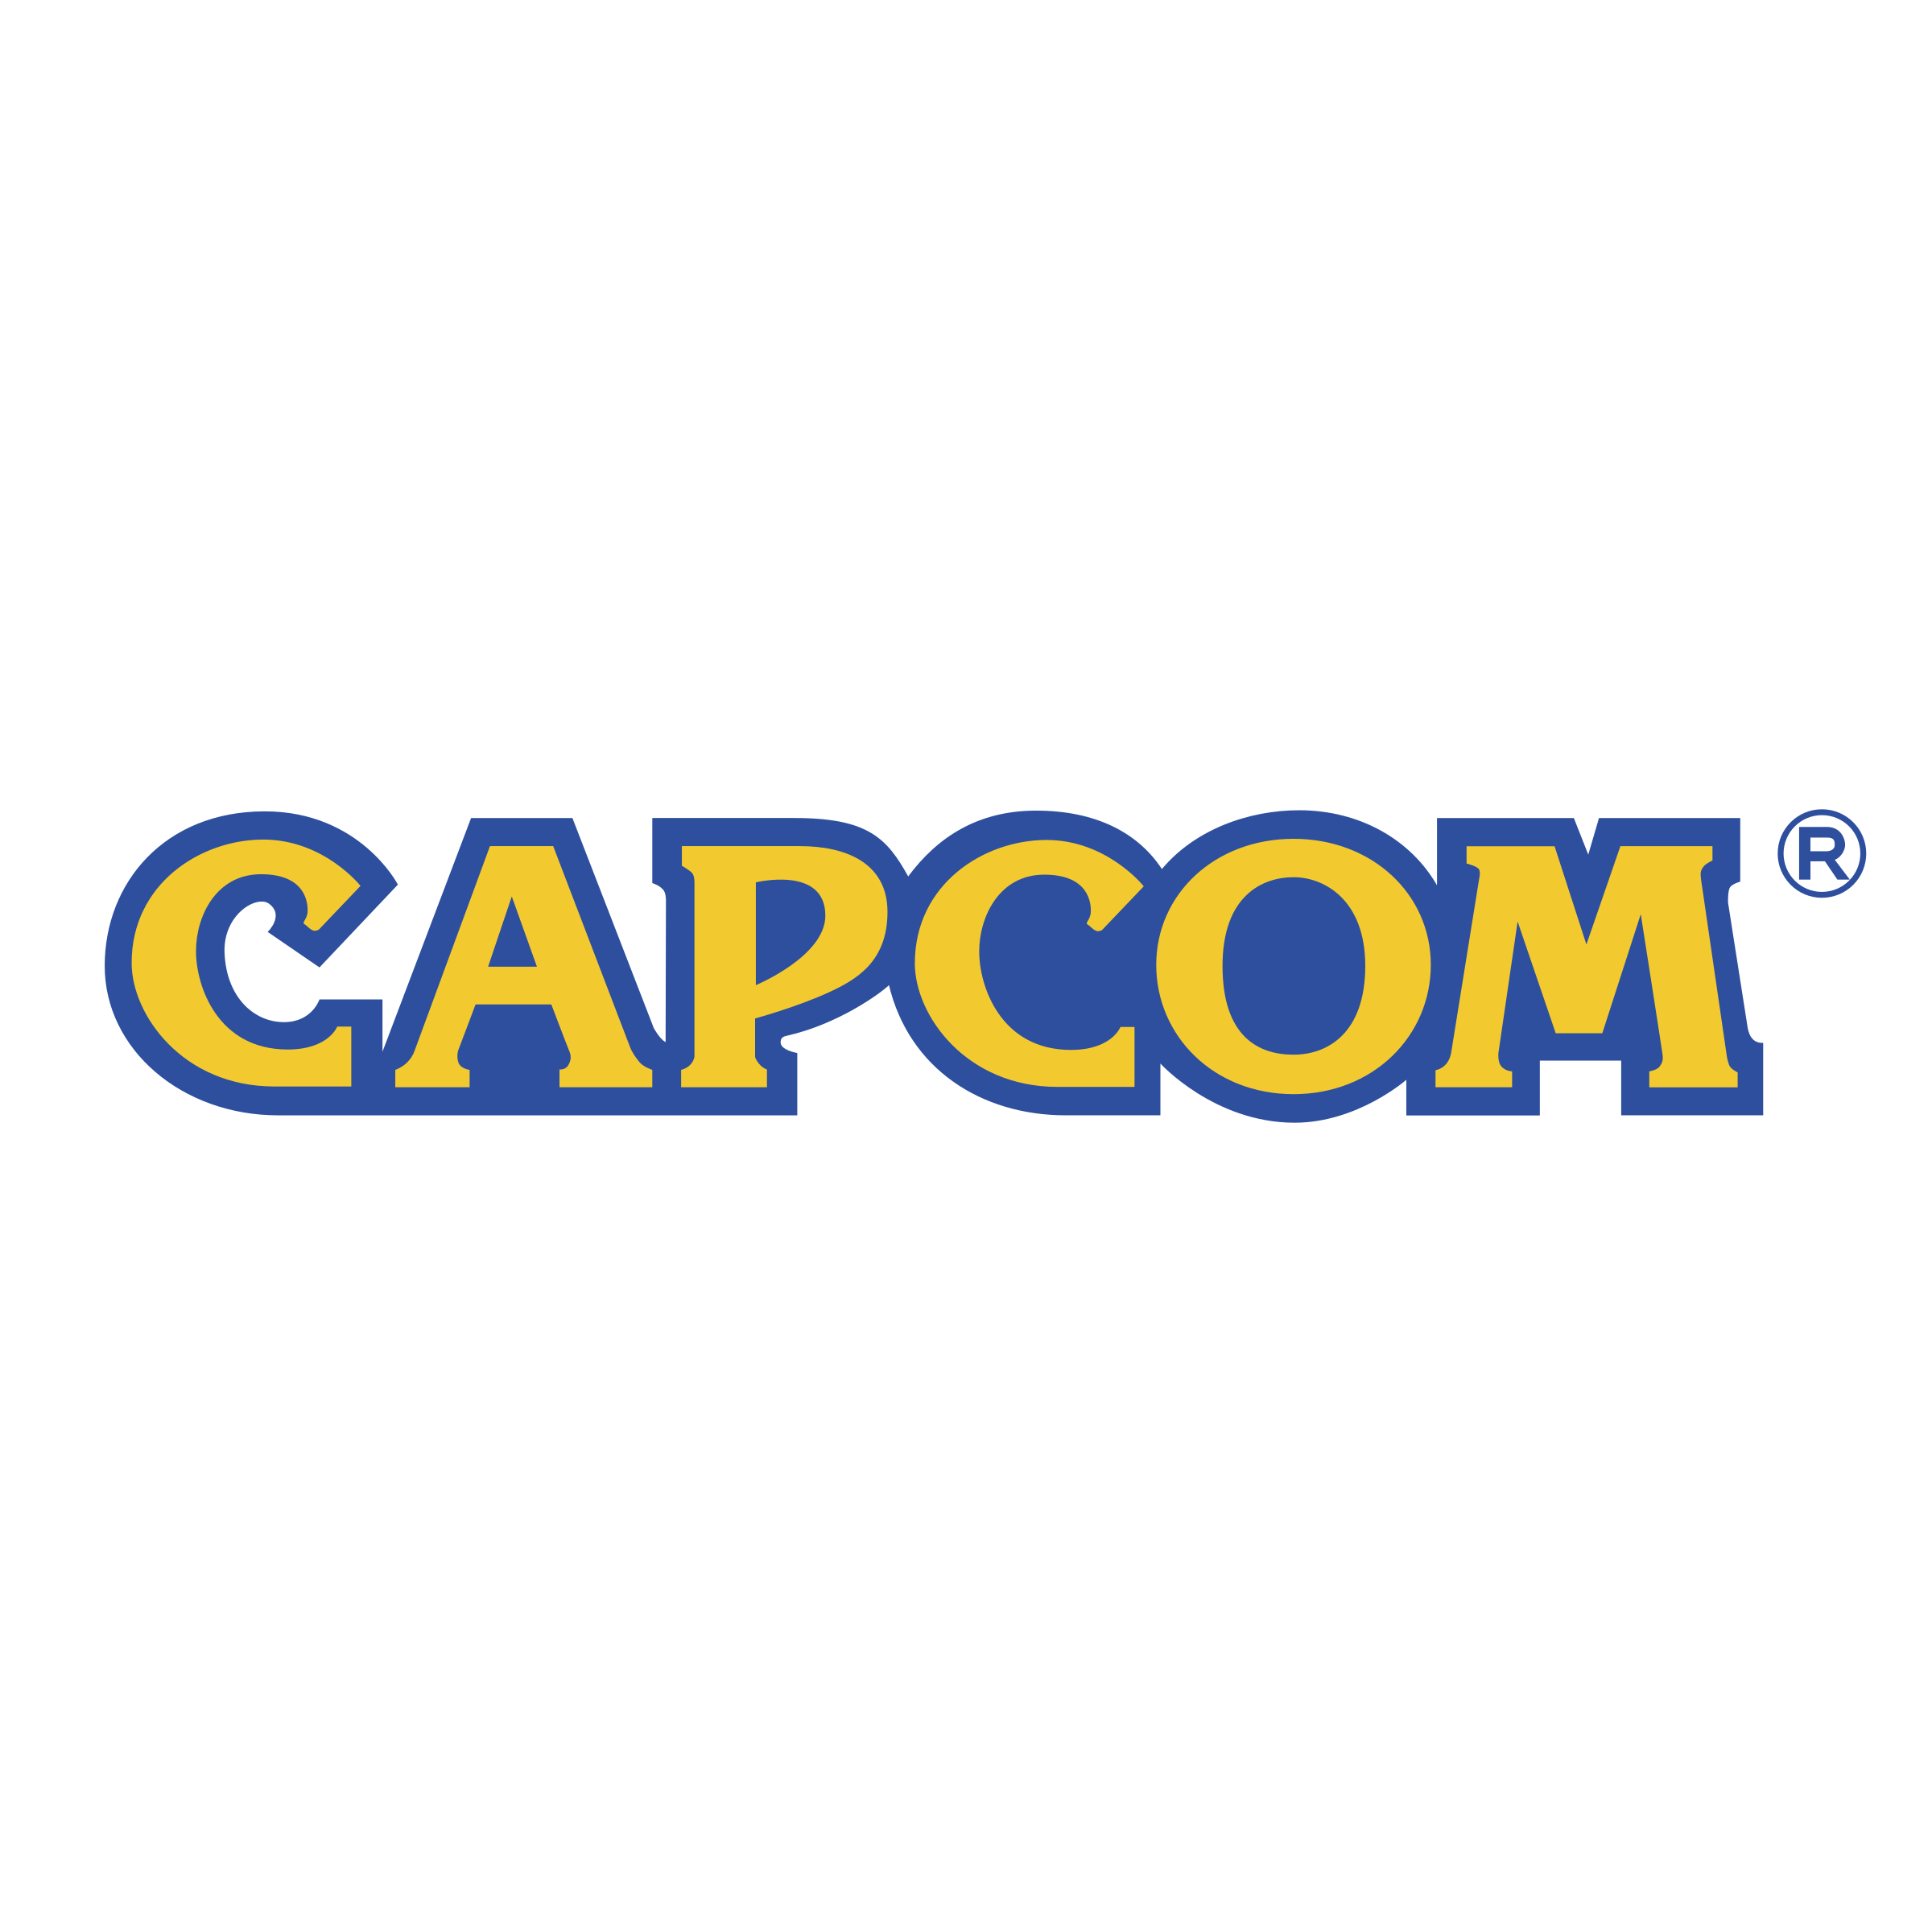 Capcom Logo - Capcom Logo PNG Transparent & SVG Vector